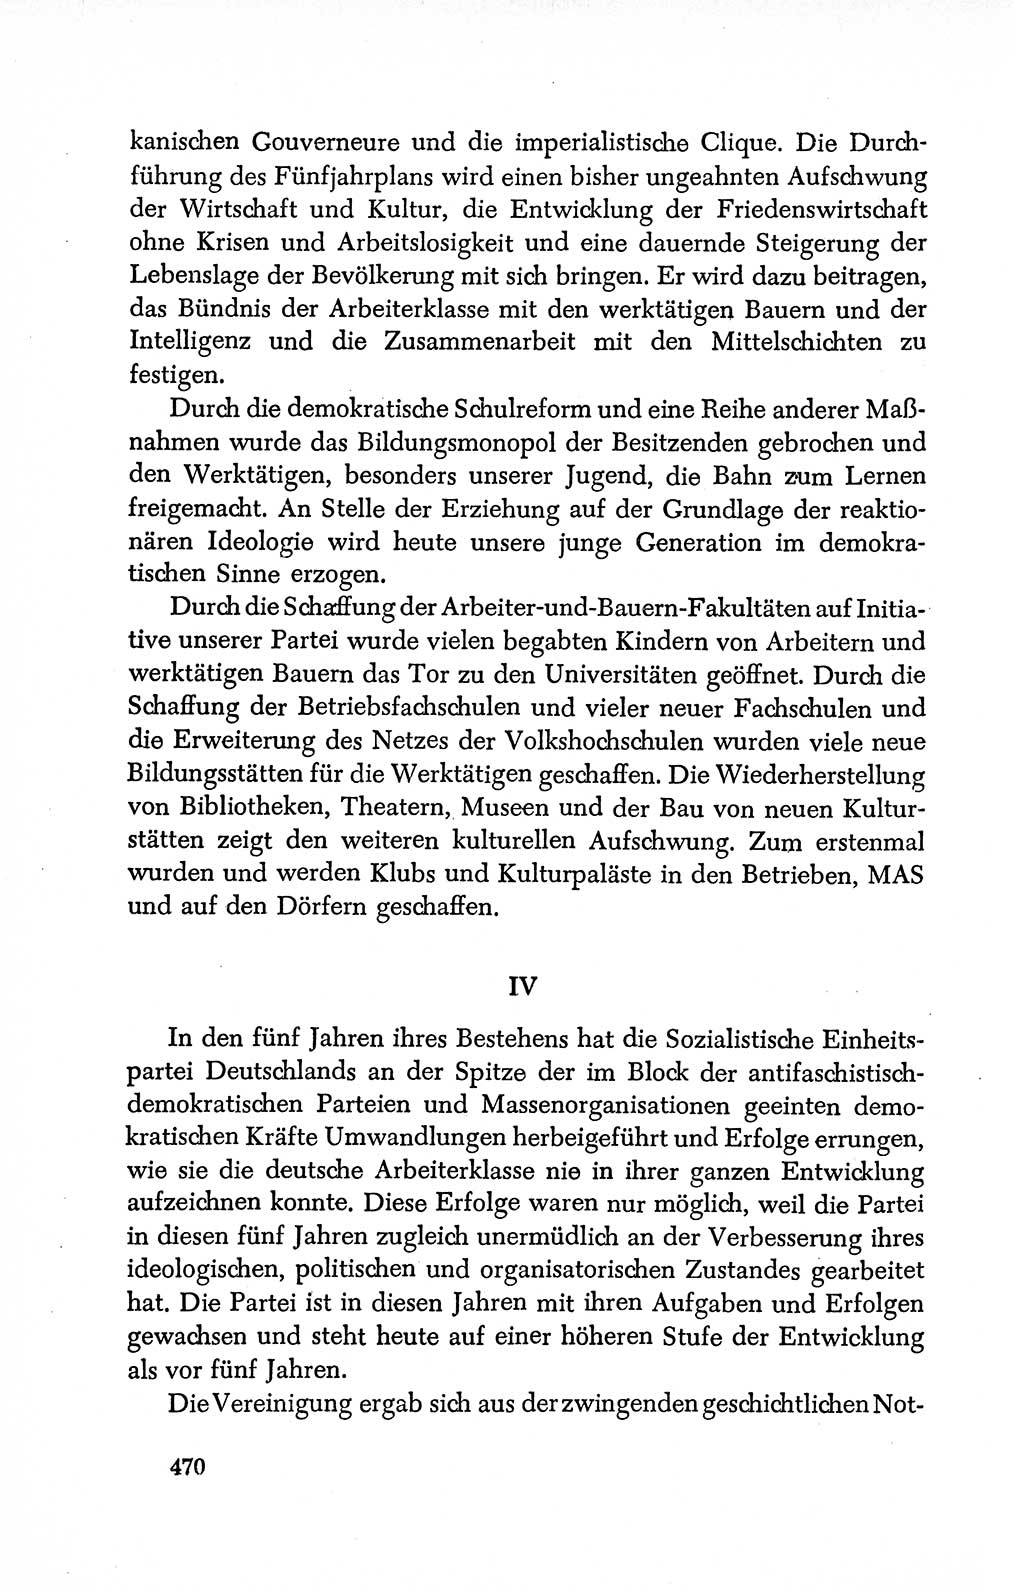 Dokumente der Sozialistischen Einheitspartei Deutschlands (SED) [Deutsche Demokratische Republik (DDR)] 1950-1952, Seite 470 (Dok. SED DDR 1950-1952, S. 470)